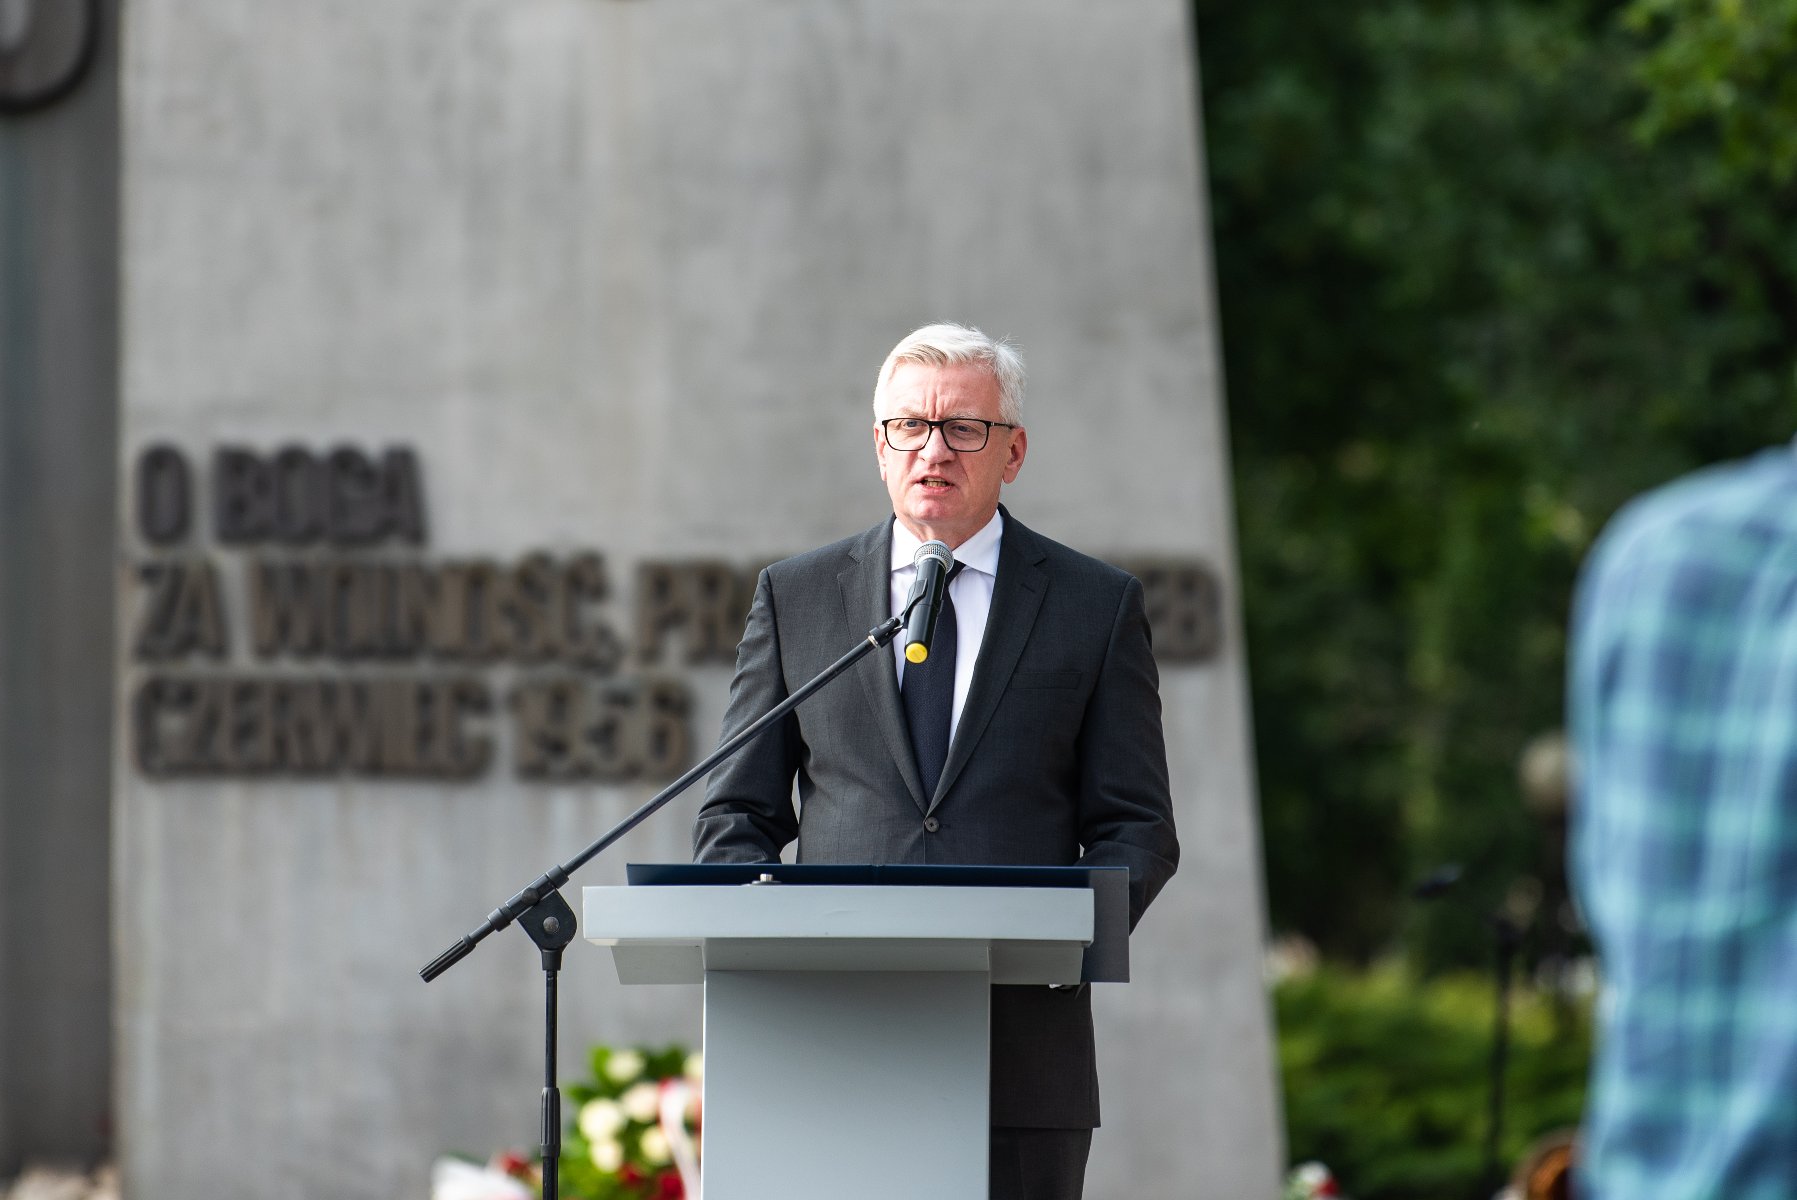 Na zdjęciu Jacek Jaśkowiak, prezydent Poznania, przy mikrofonie, w tle Pomnik Poznańskiego Czerwca - grafika artykułu